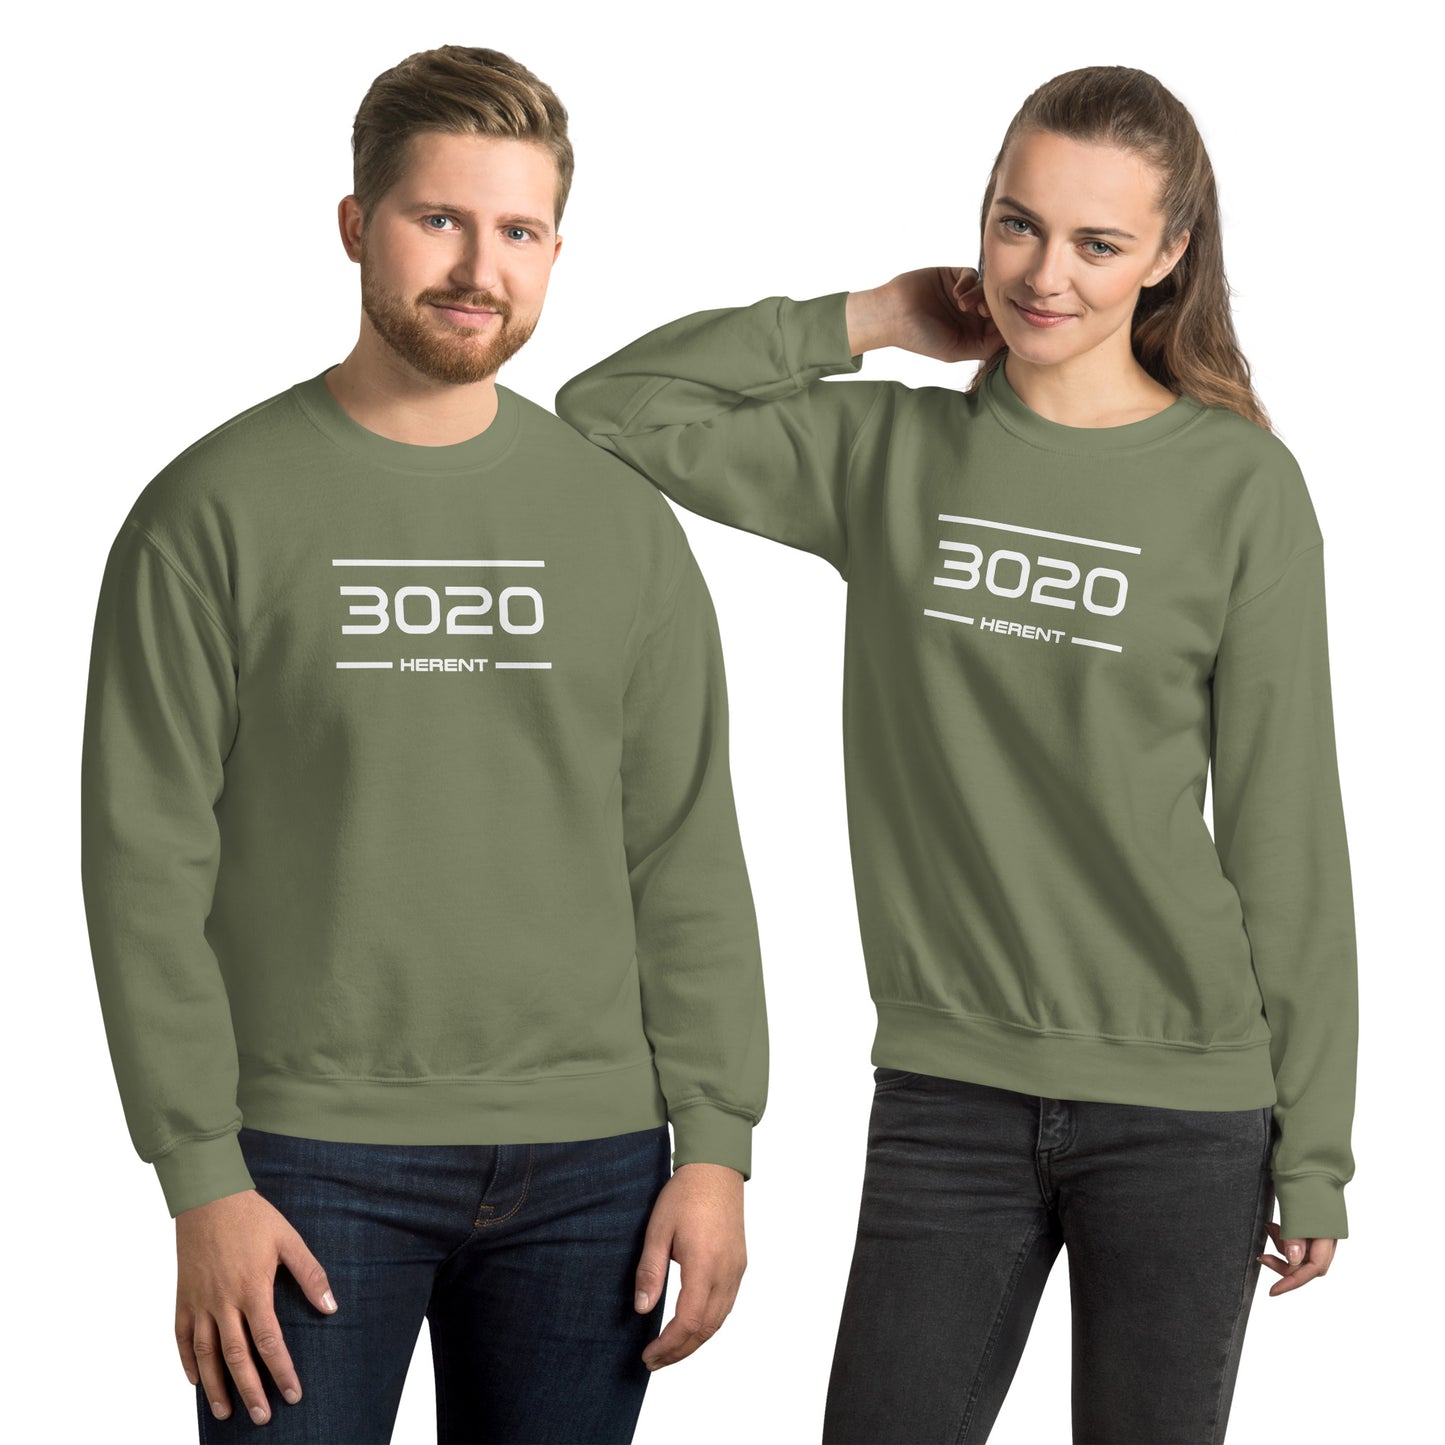 Sweater - 3020 - Herent (M/V)